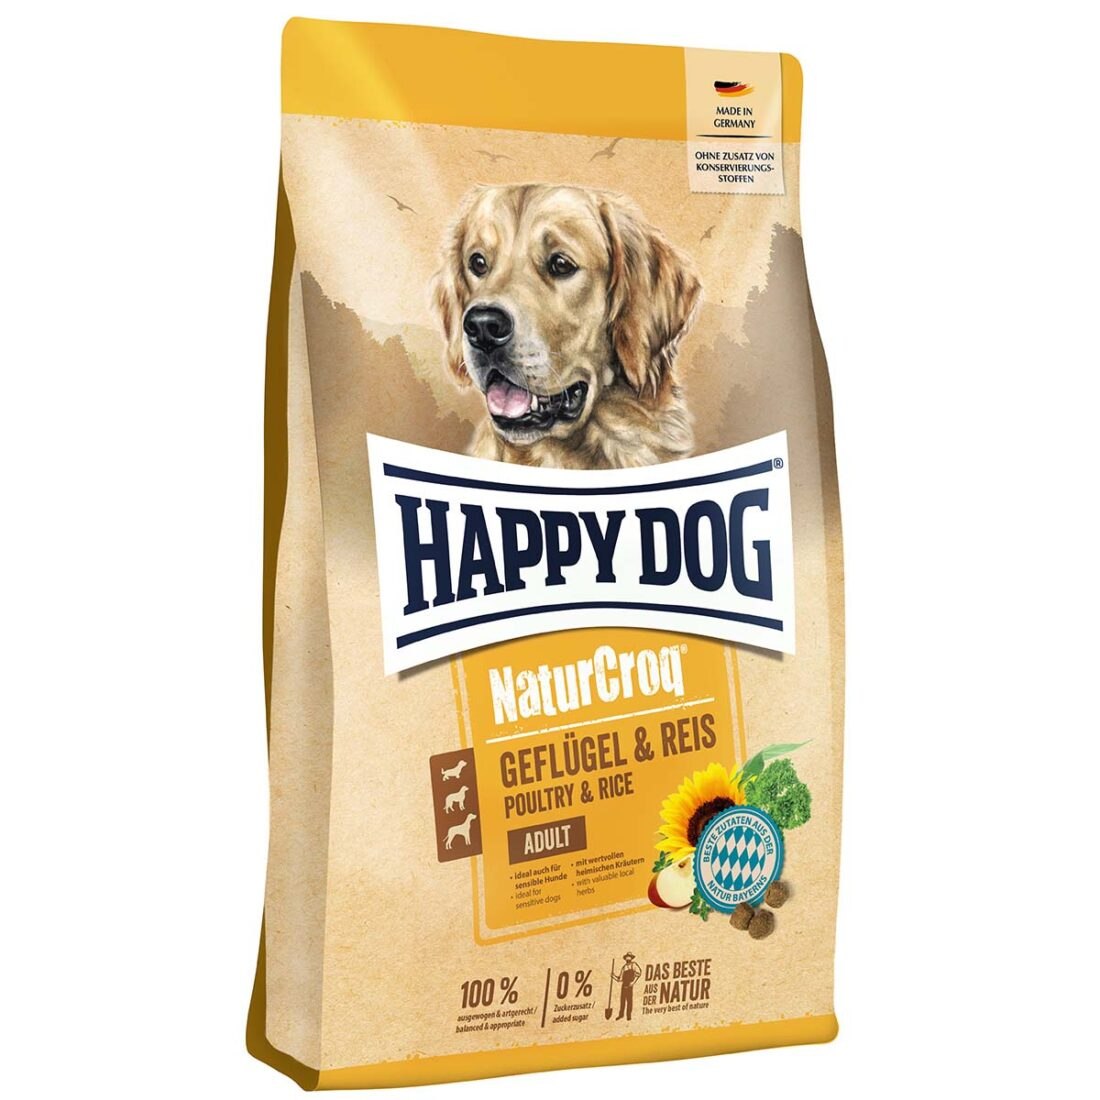 Happy Dog NaturCroq čisté drůbeží maso